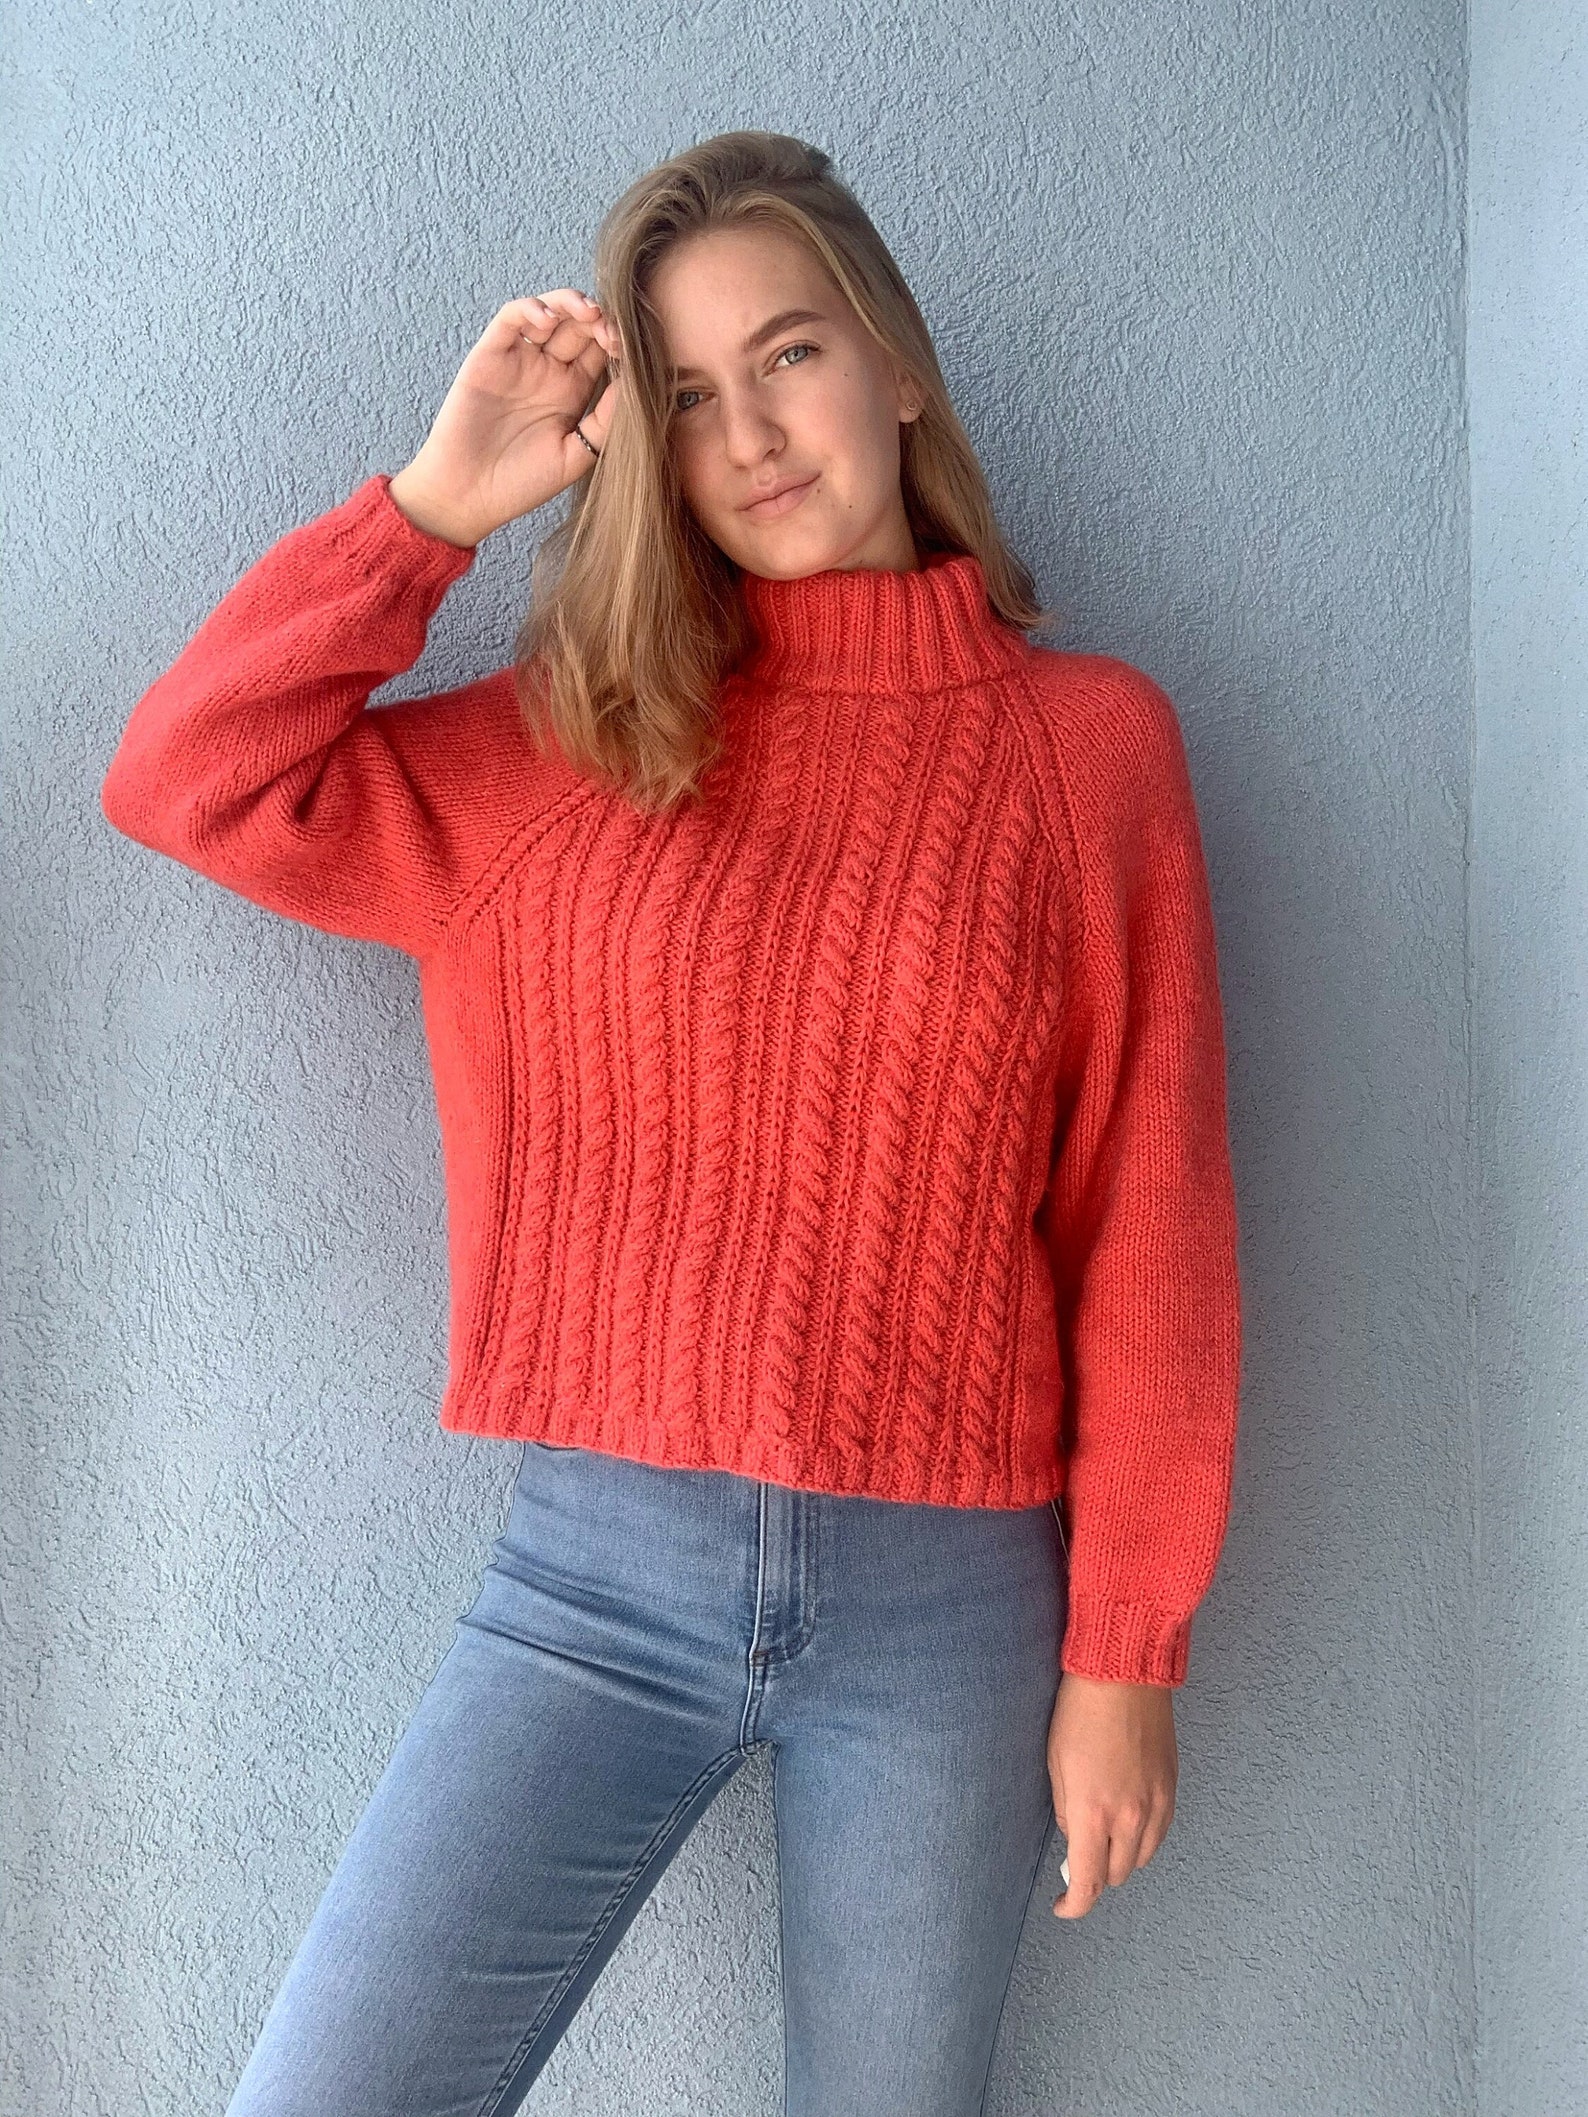 Oversized knit alpaca sweater women | Etsy